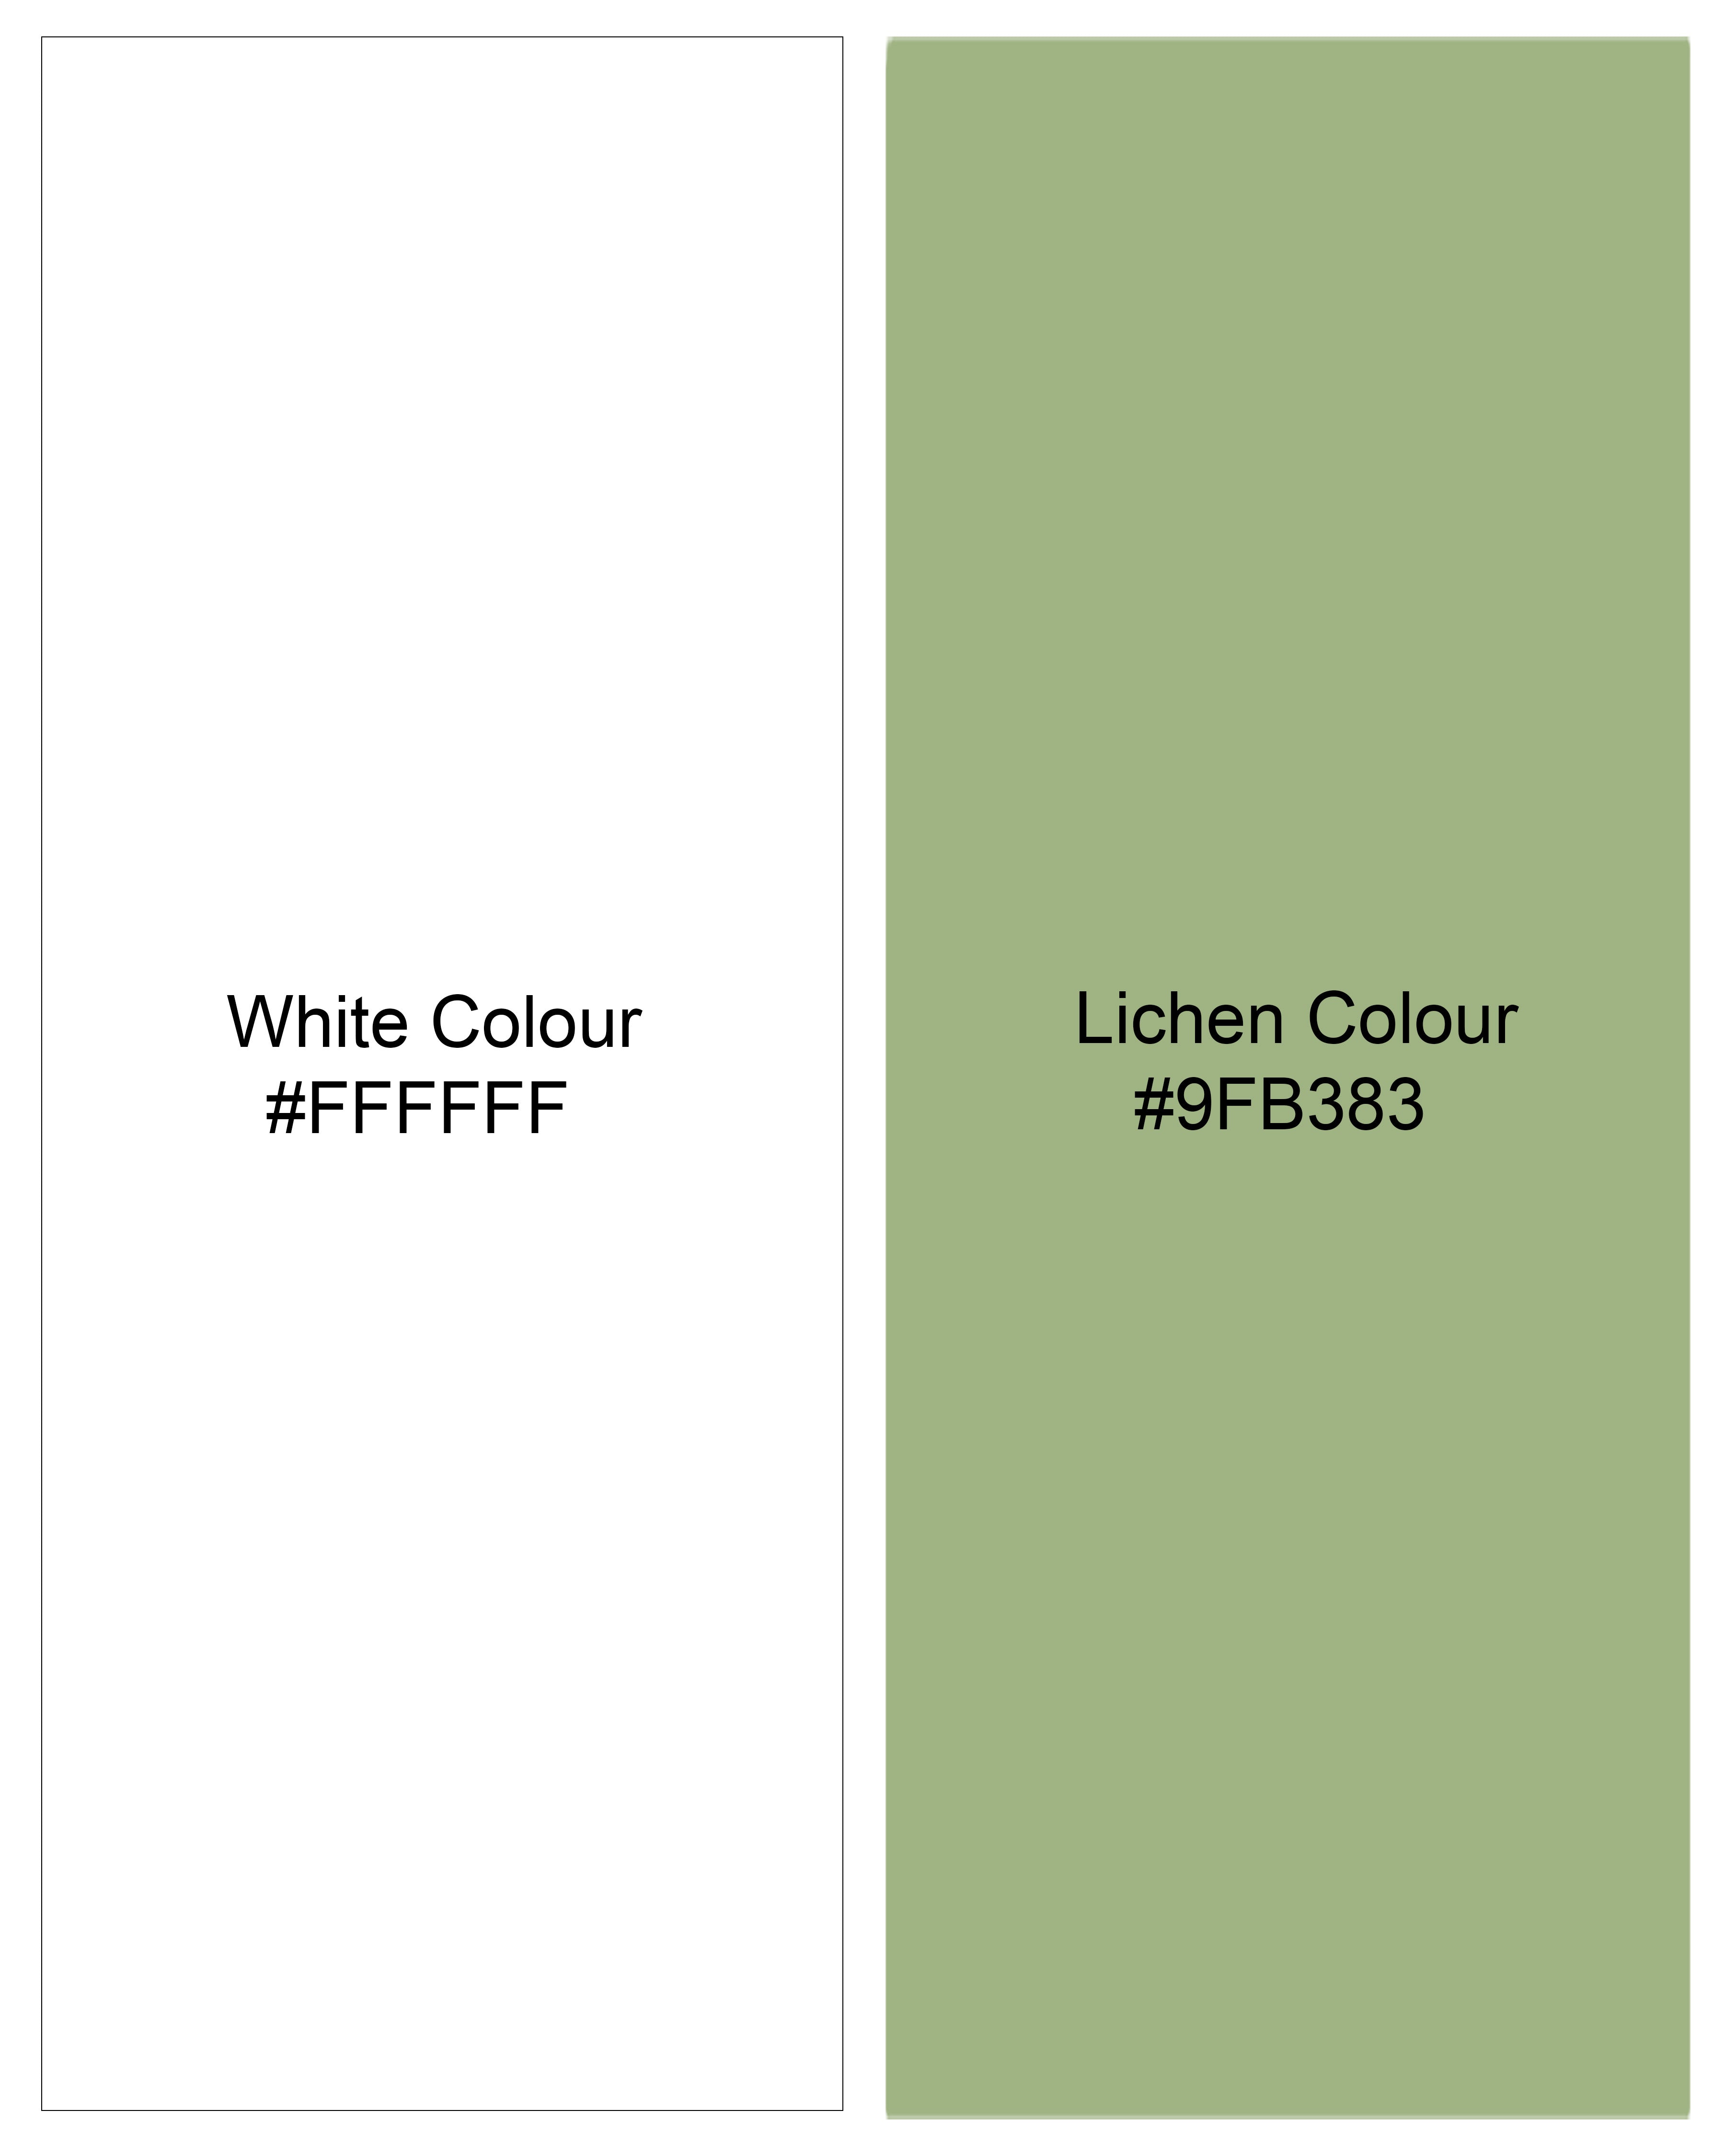 Bright White with Lichen Green Striped Premium Tencel Shirt  8616-CC-38,8616-CC-H-38,8616-CC-39,8616-CC-H-39,8616-CC-40,8616-CC-H-40,8616-CC-42,8616-CC-H-42,8616-CC-44,8616-CC-H-44,8616-CC-46,8616-CC-H-46,8616-CC-48,8616-CC-H-48,8616-CC-50,8616-CC-H-50,8616-CC-52,8616-CC-H-52